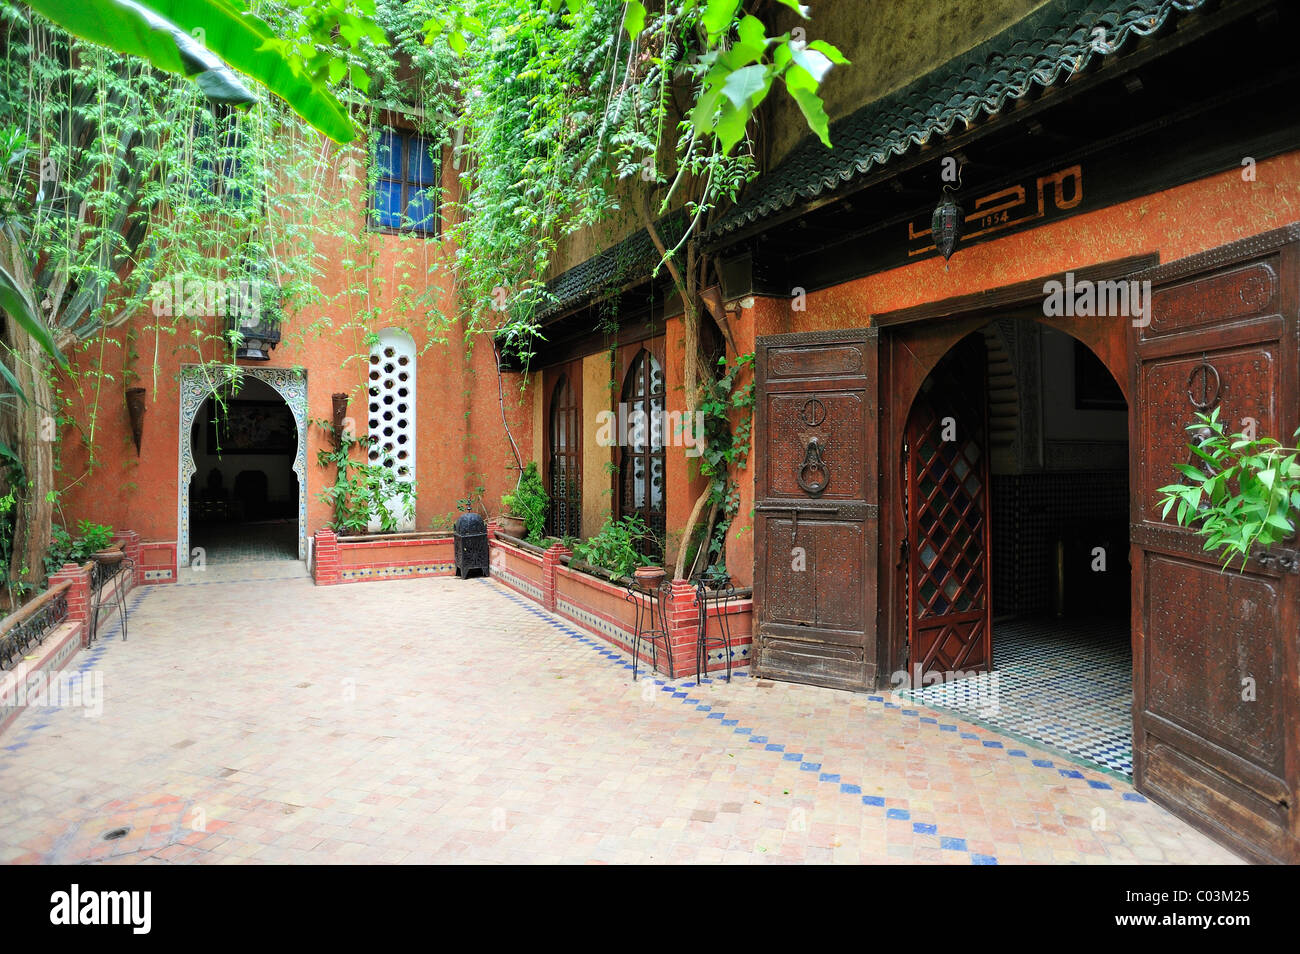 Riad, une maison traditionnelle avec une cour intérieure, Marrakech, Maroc, Afrique Banque D'Images